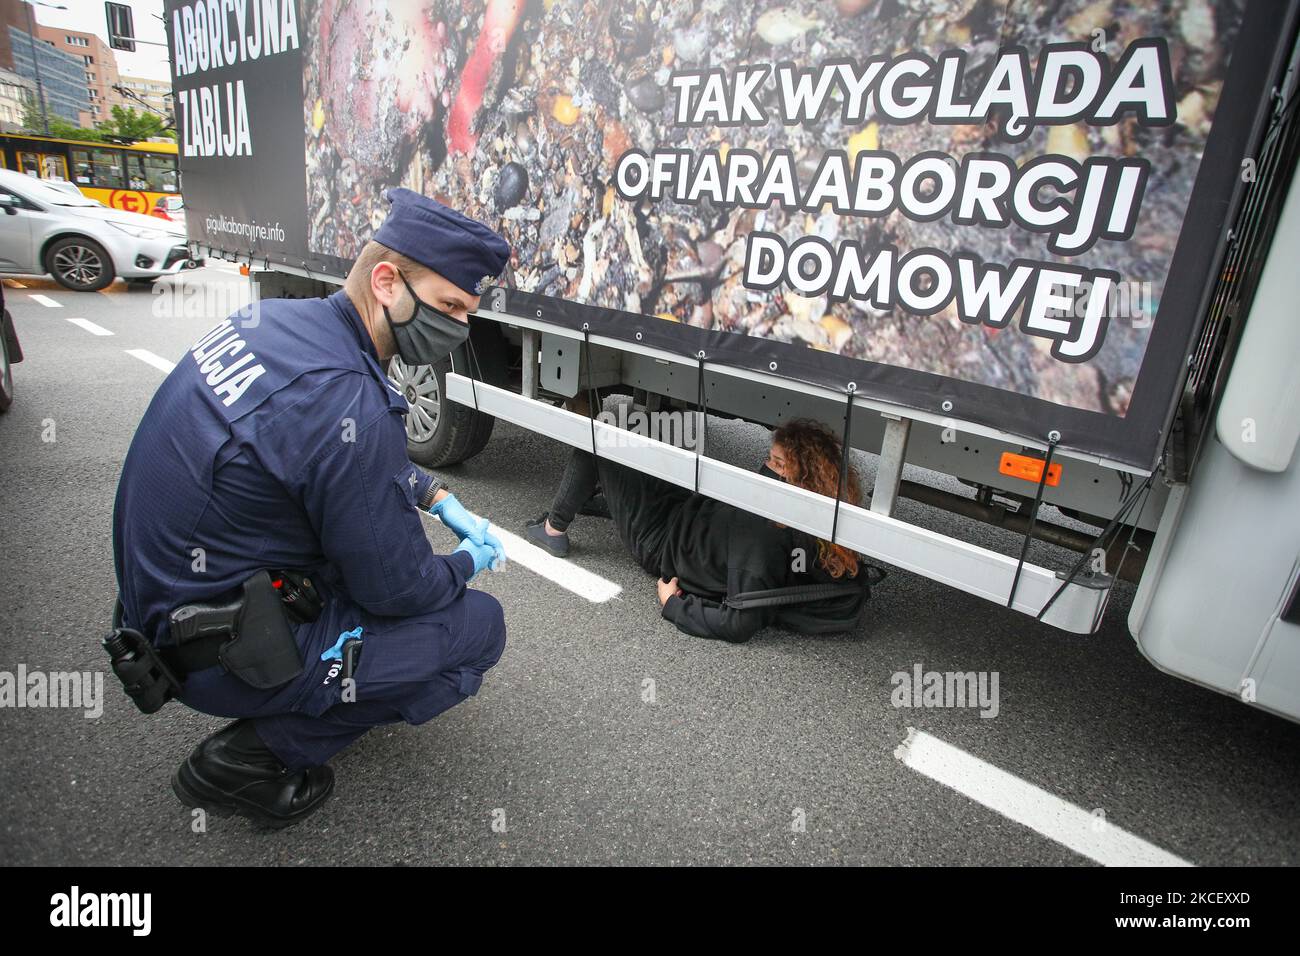 Am 19. Mai 2021 liegt eine Frau unter einem Transporter, um ihn in Warschau, Polen, zu blockieren. Anti-Abtreibungsaktivisten in einem Lieferwagen, in dem grafische Bilder von abgetriebenen Föten gezeigt wurden, wurden von Pro-Choice-Aktivisten im Zentrum von Warschau, Polen, gestoppt. Die 20-jährige Pro-Choice-Aktivistin Weronika saß auf der Straße vor dem Bus, als es um die Ausfahrt des geschäftigen ONZ-Kreisels ging. Die Fahrer des Busses meldete einen lauten Alarm durch die Lautsprecher des Wagens, um den Aktivisten abzuwehren. Zwei weitere Frauen, Magda und Lu, hockten sich unter dem Bus. Mehrere Dutzend Polizisten kamen bald am Tatort an, und die Aktivisten wurden mit Geldstrafen belegt Stockfoto